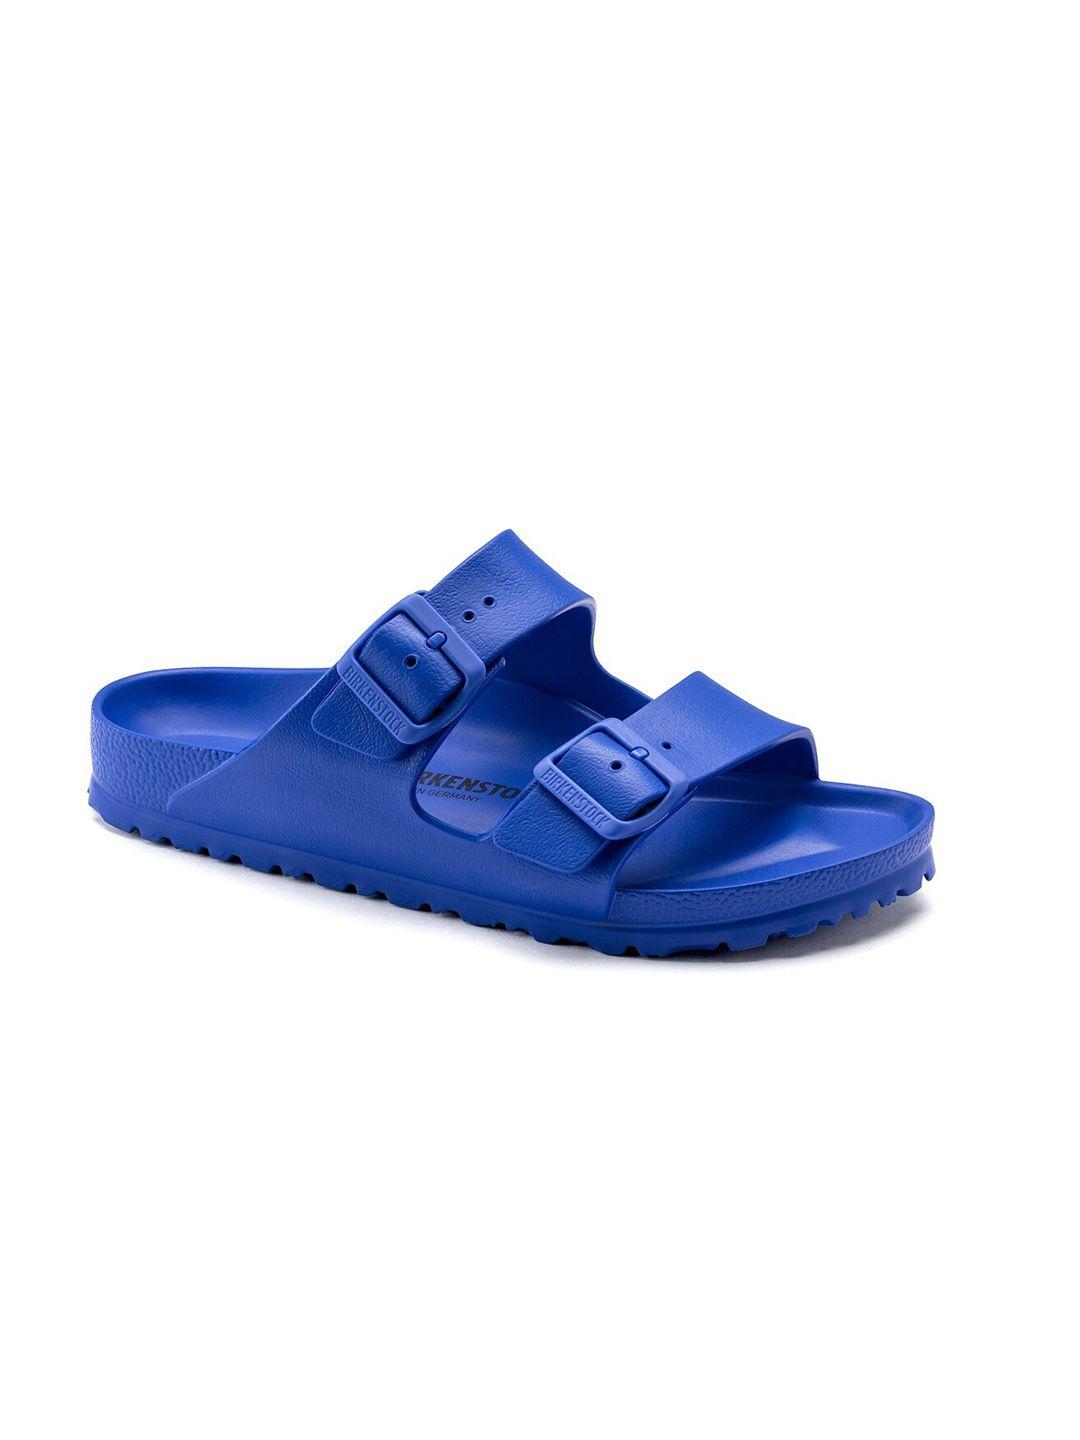 birkenstock unisex blue arizona comfort sandals